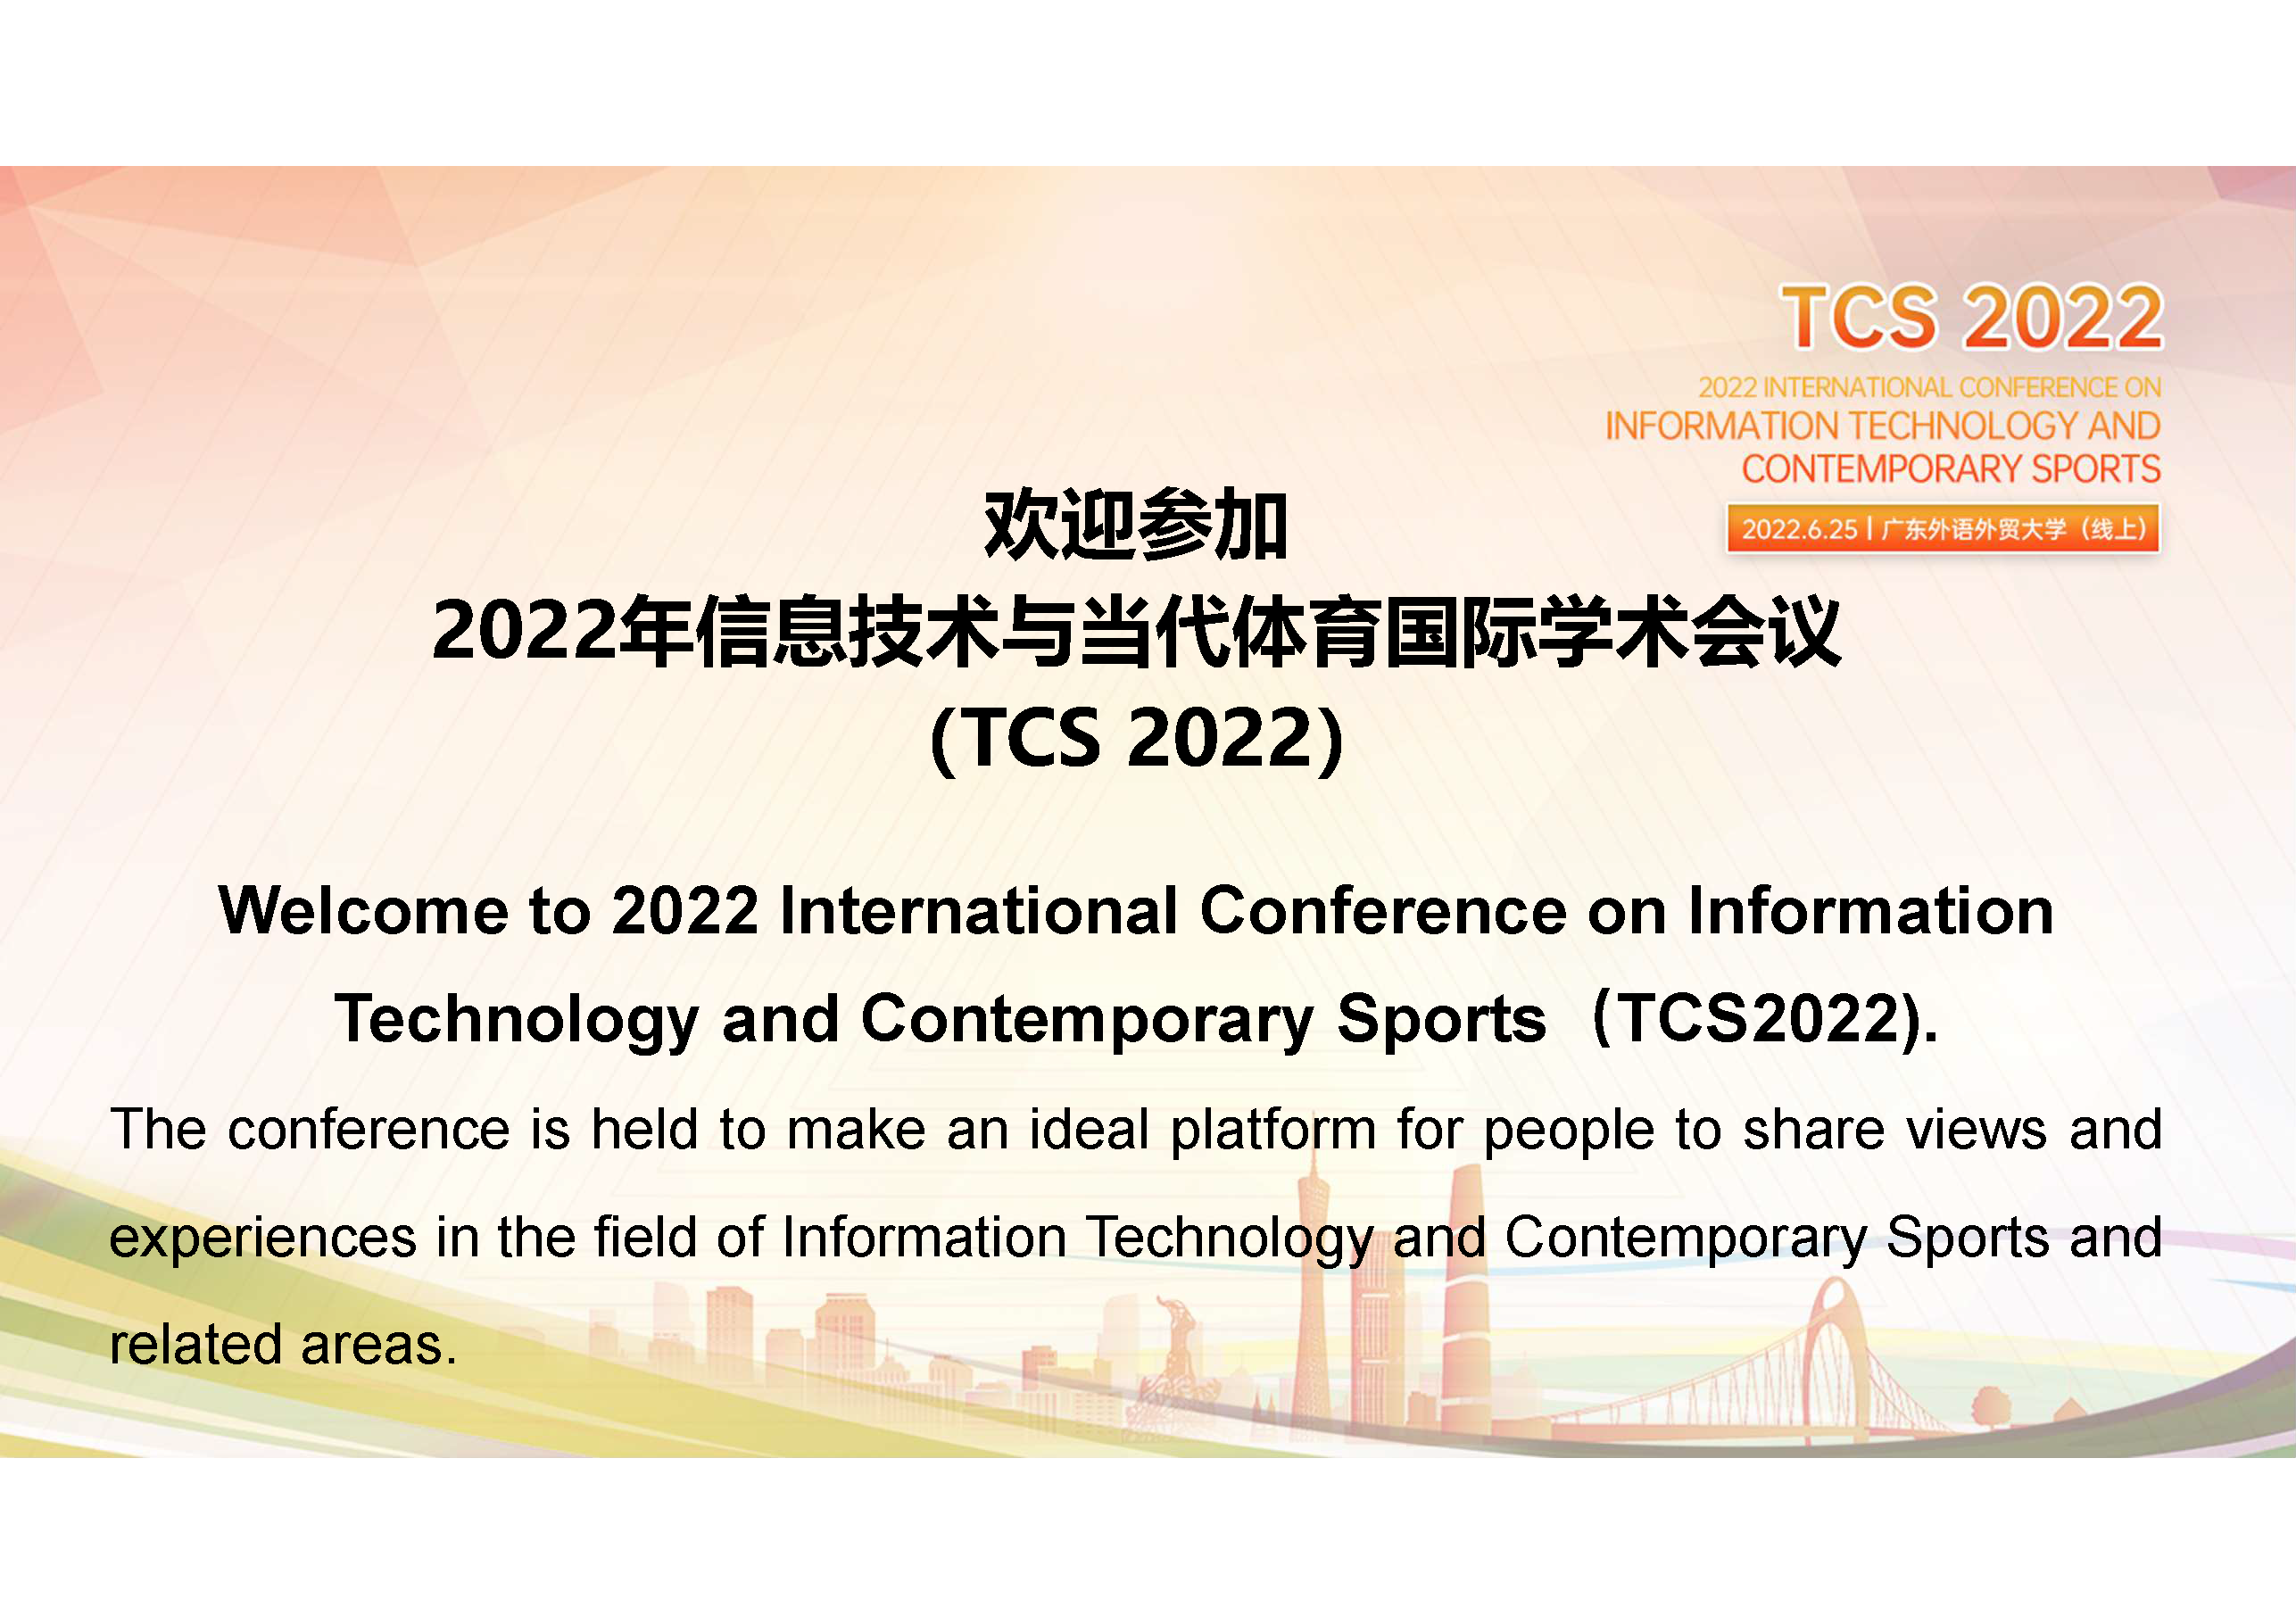 《2022年信息技术与当代体育国际会议》流程PPT（主会场）_页面_02.png